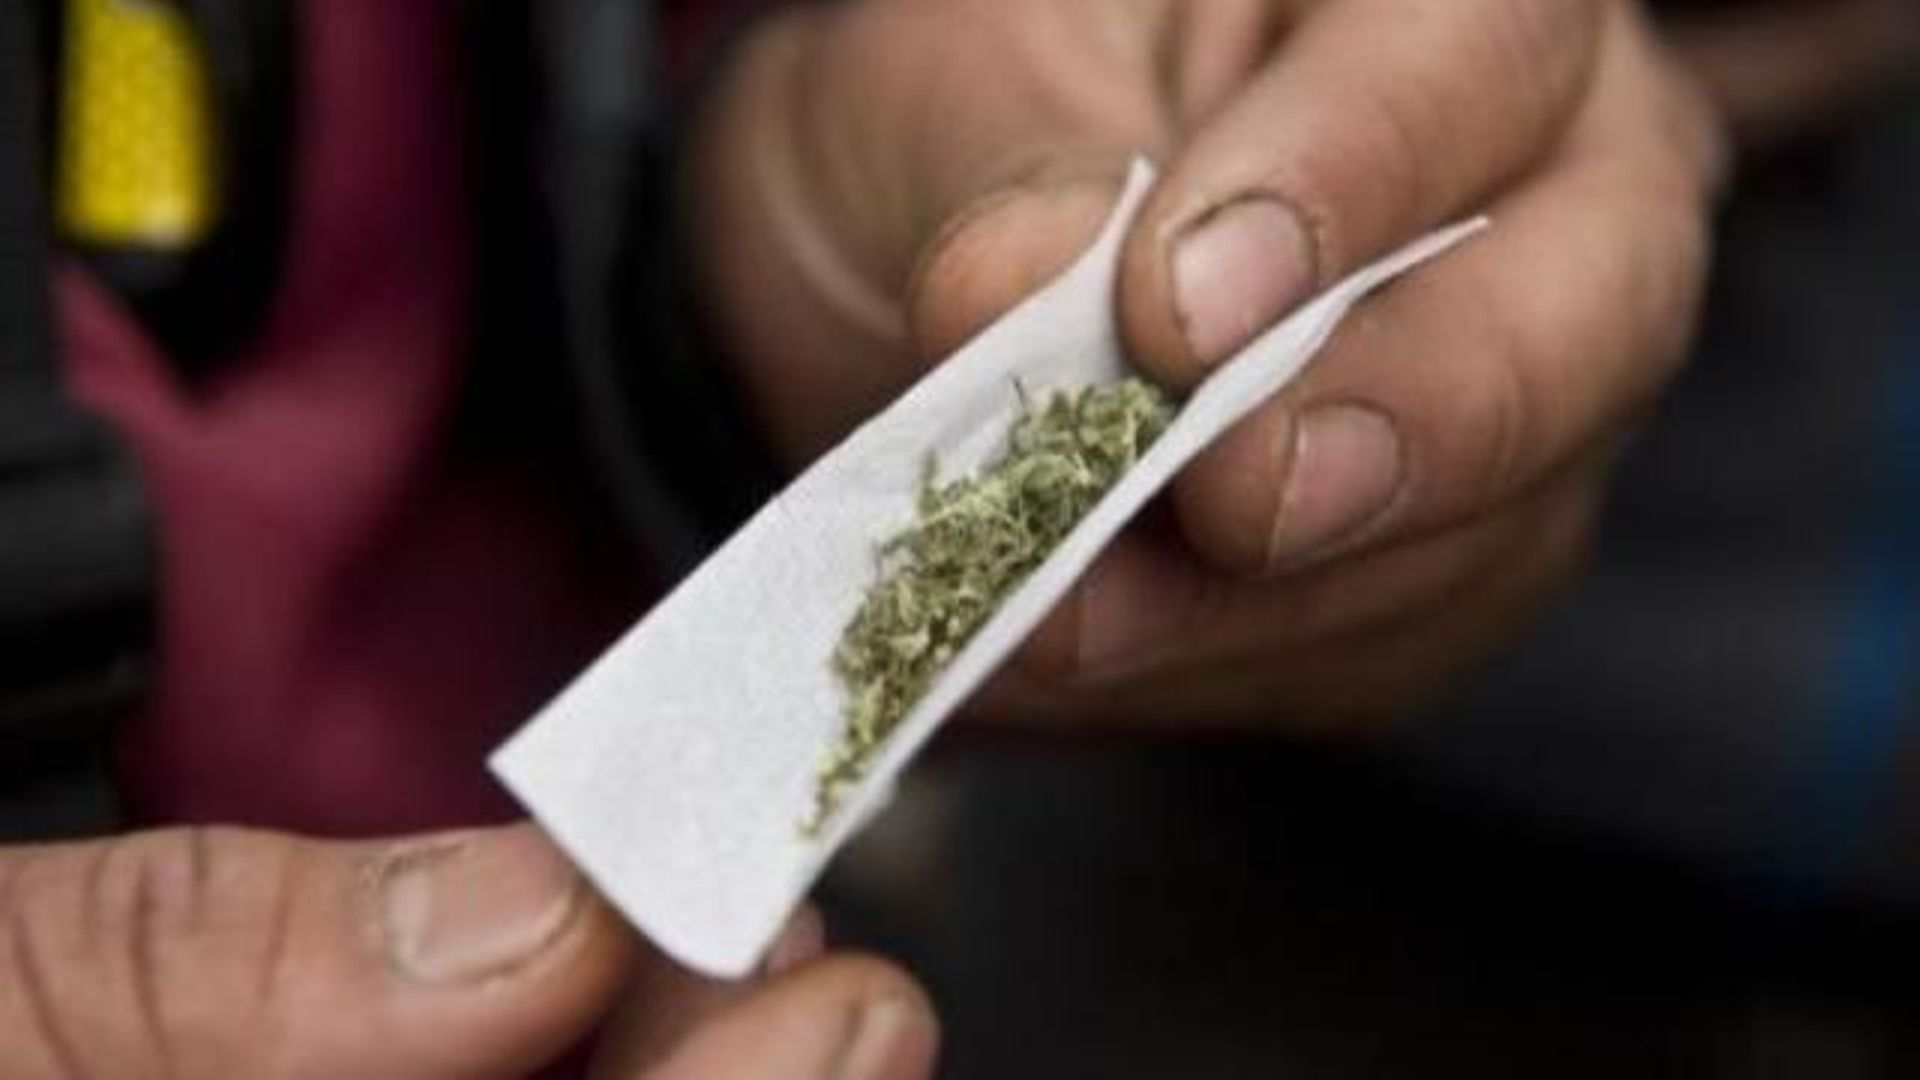 le-cannabis-en-baisse-mais-toujours-drogue-de-predilection-des-jeunes